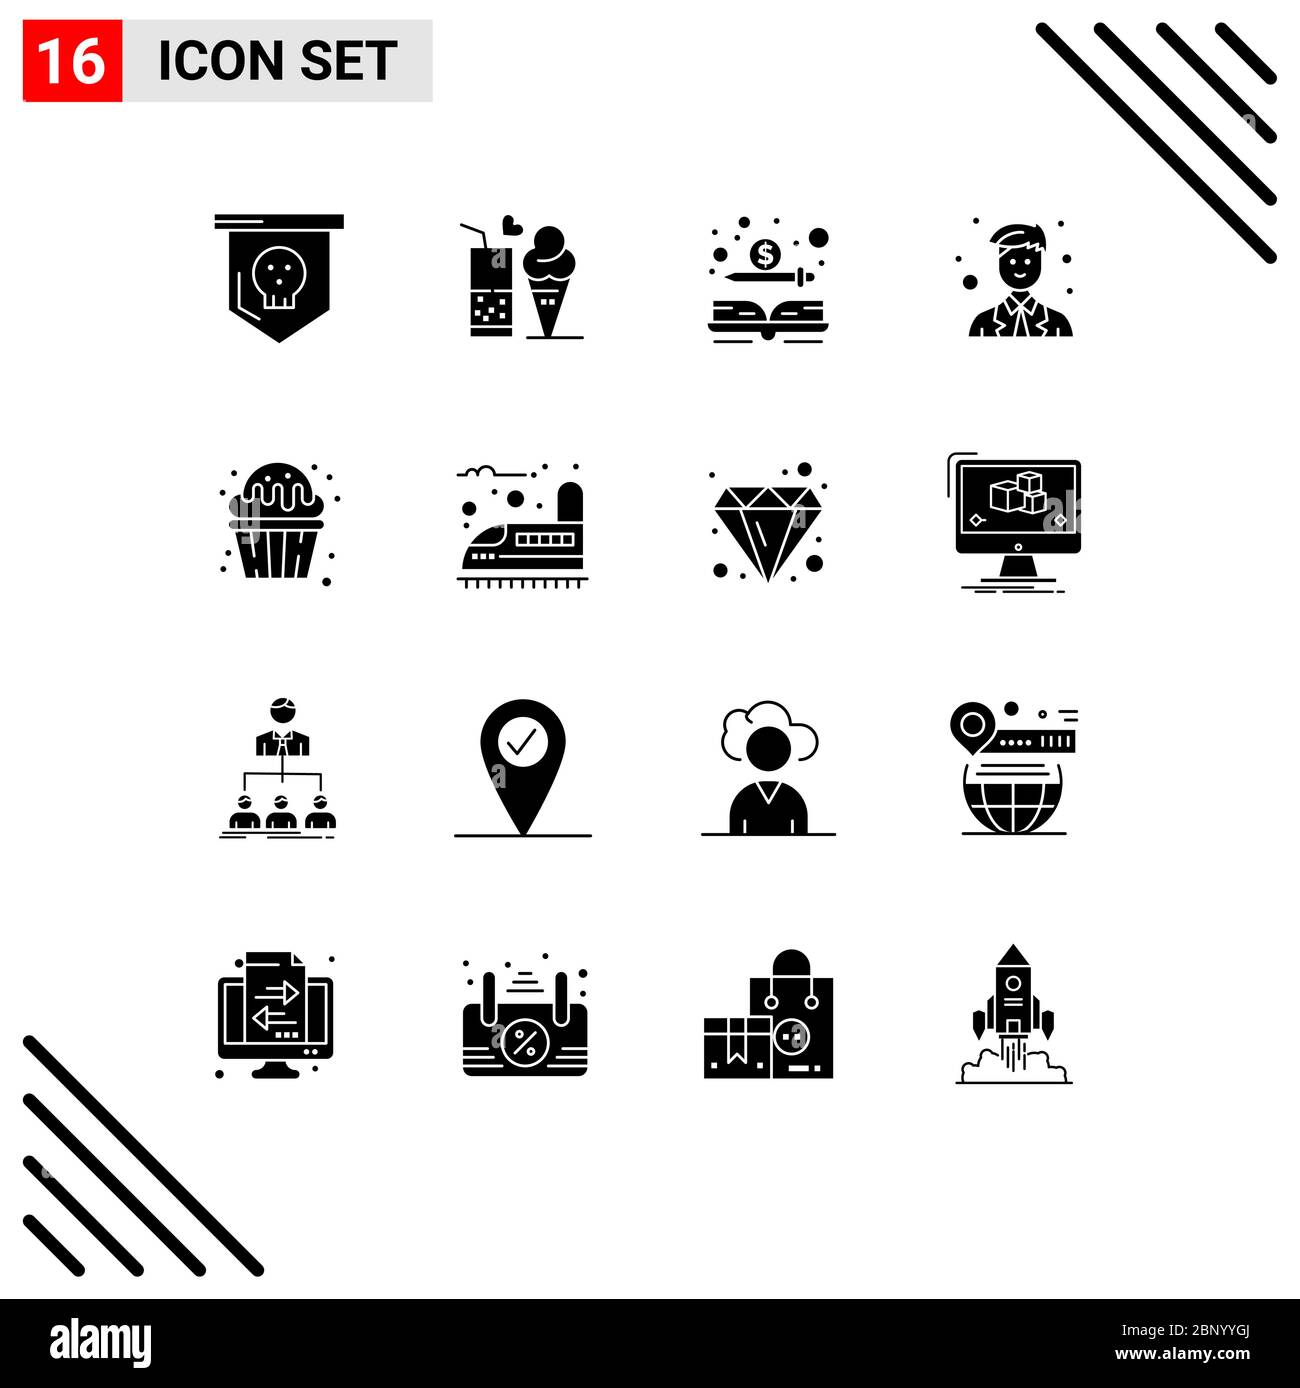 Confezione icone vettoriali di 16 simboli e segni per cupcake, sito, cono, uomo, denaro elementi di disegno vettoriale editabili Illustrazione Vettoriale